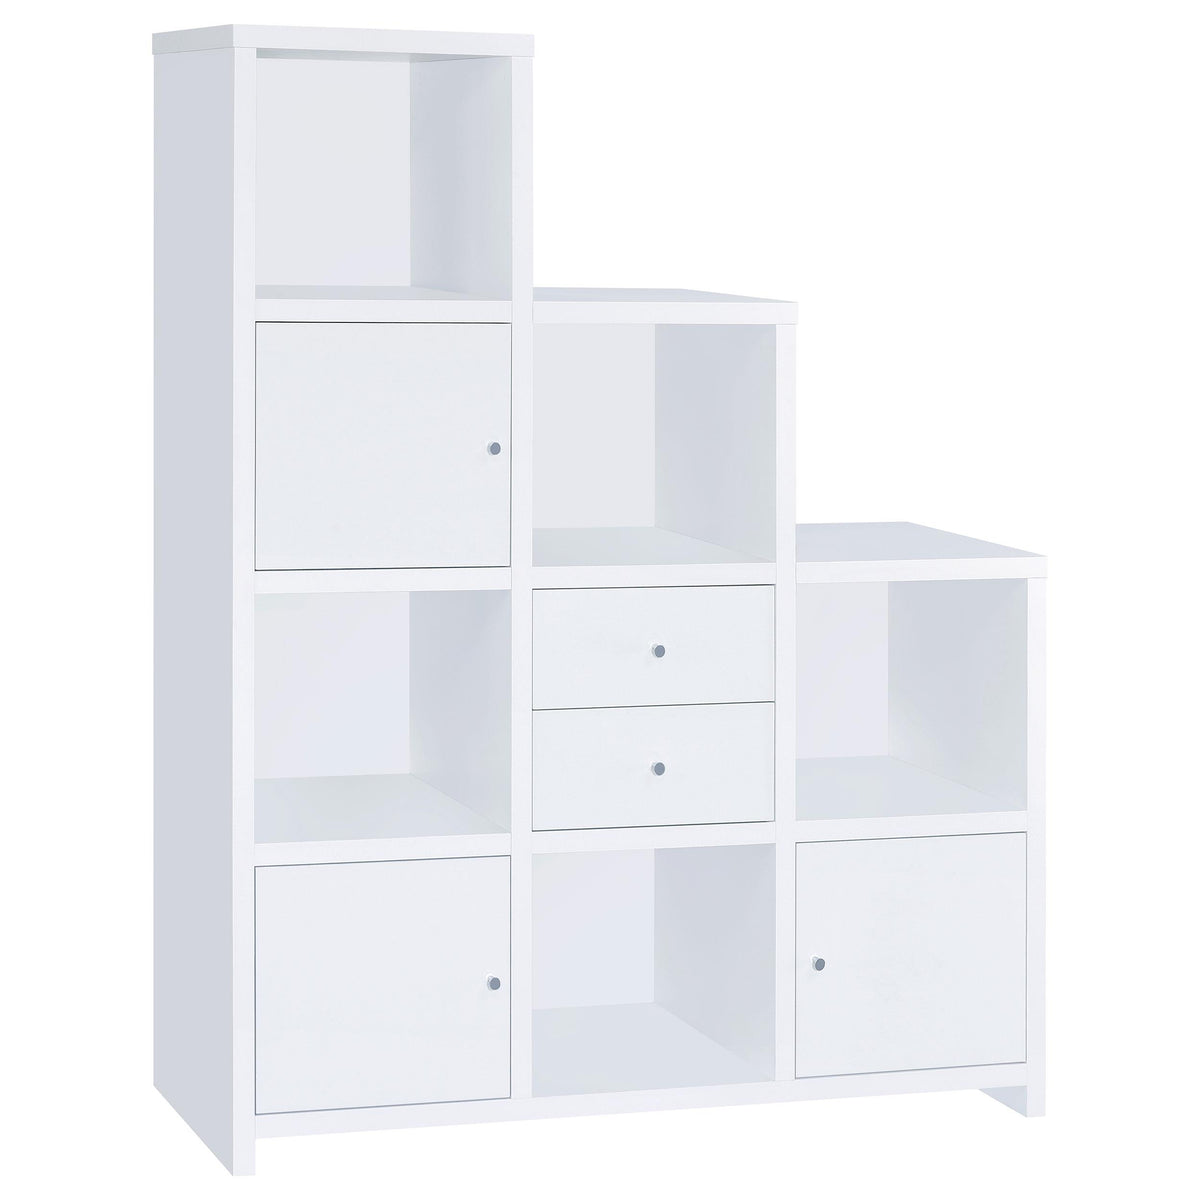 G801169 Contemporary White Bookcase G801169 Contemporary White Bookcase Half Price Furniture